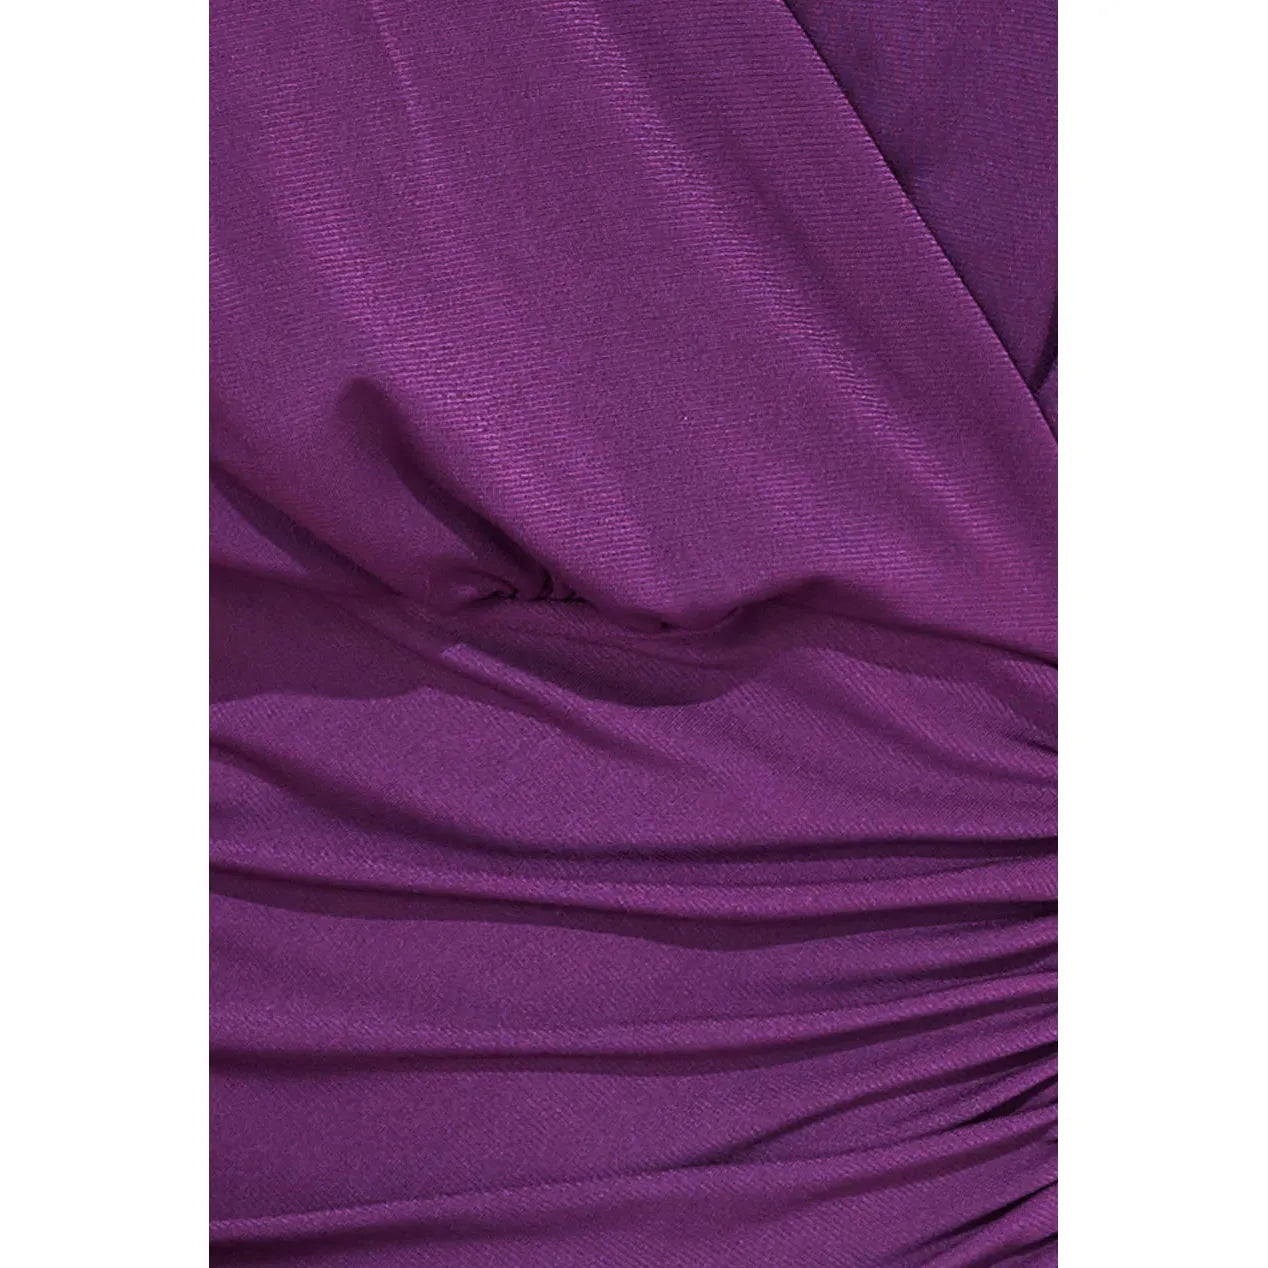 Split Seam Maxi Dress - Purple